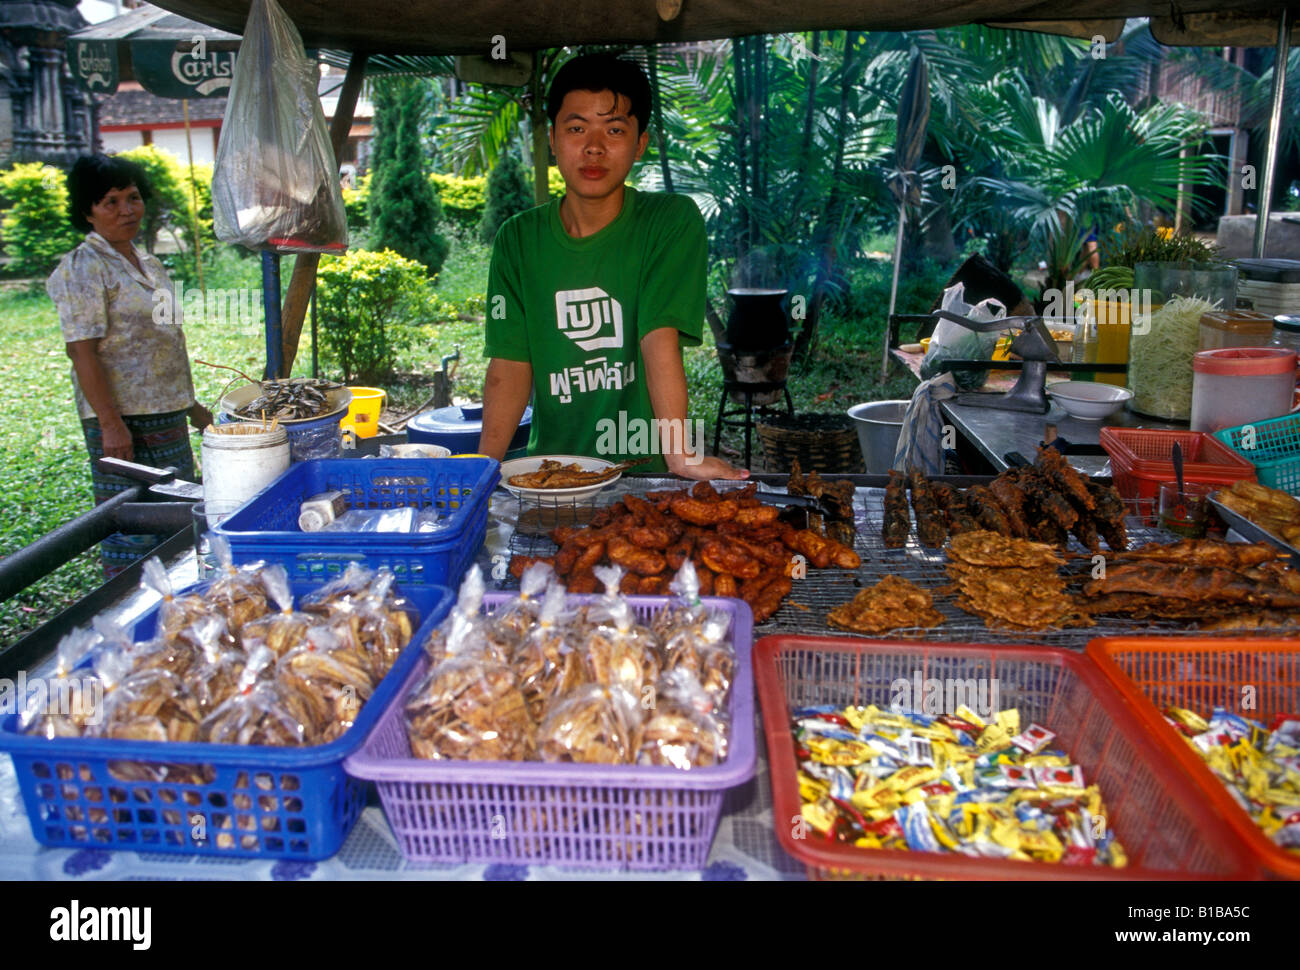 Thai man, vendeur de rue, de l'alimentation, de la nourriture, de la viande grillée, grillades, Chiang Mai, la province de Chiang Mai, Thaïlande, Asie Banque D'Images